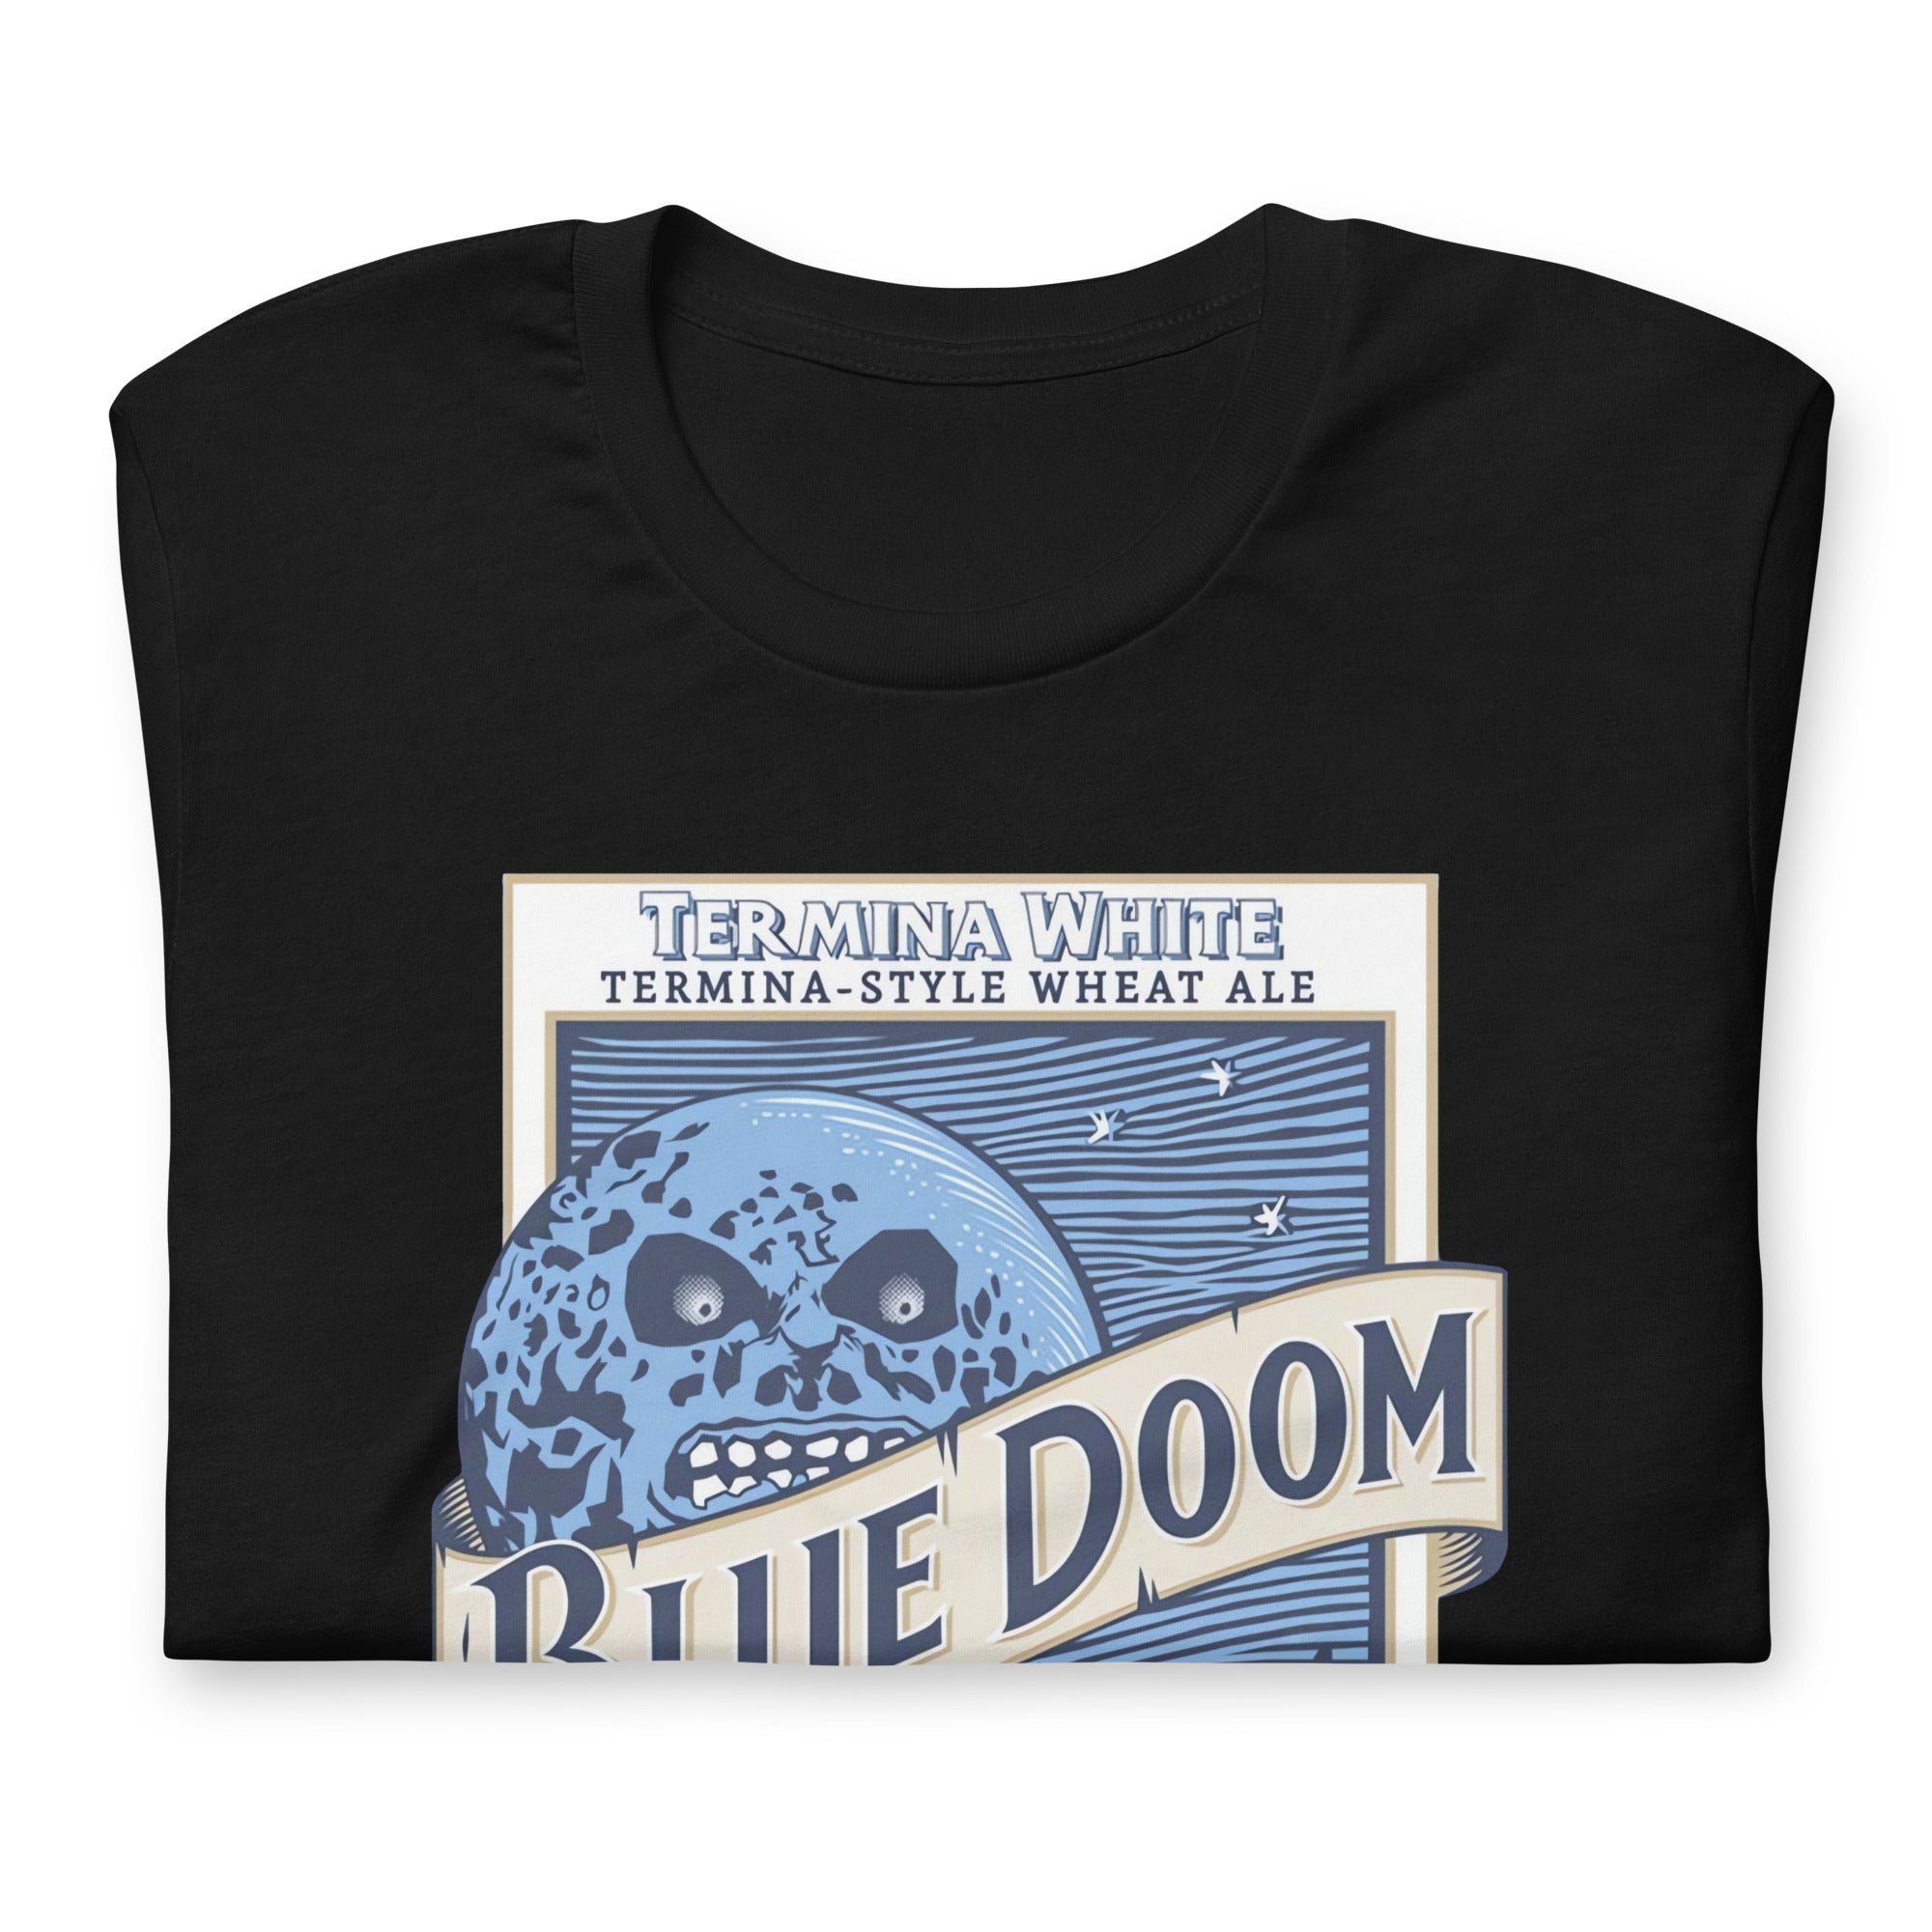 Camiseta Blue Doom, Disponible en la mejor tienda online para comprar tu merch favorita, la mejor Calidad, compra Ahora en Superstar! 